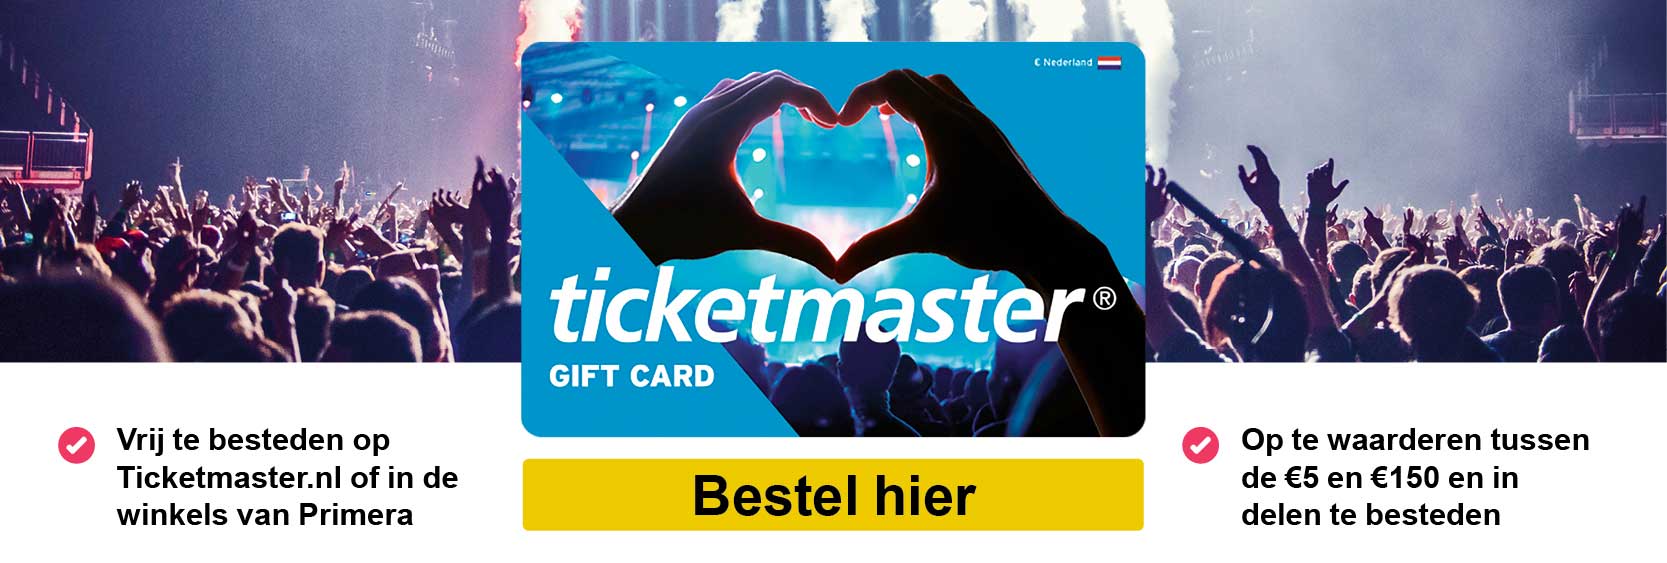 Ticketmaster_banner_def